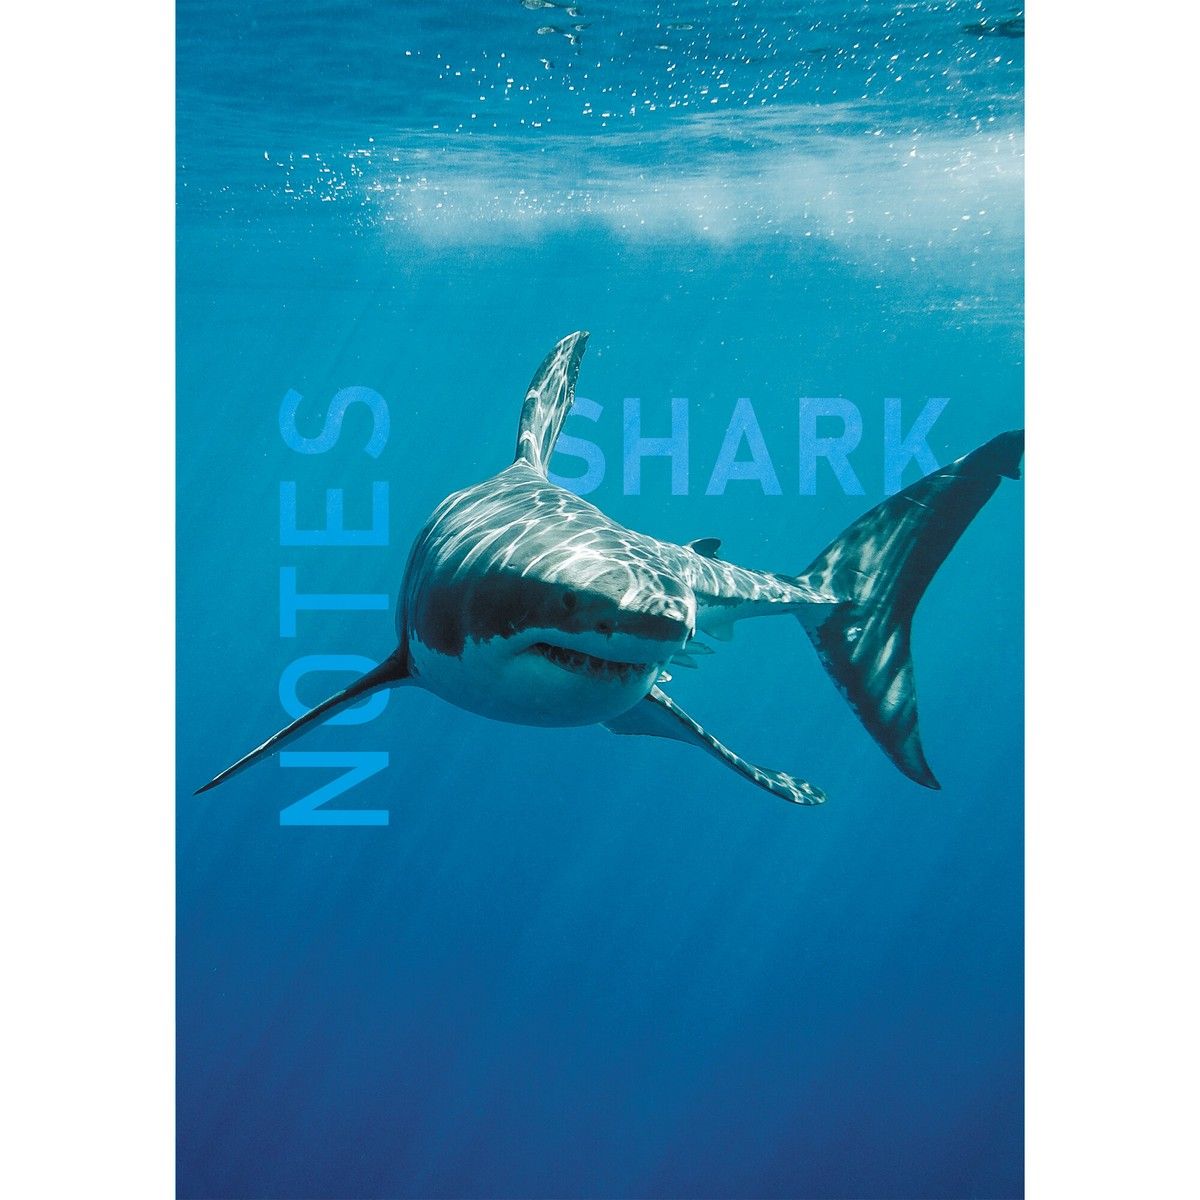   5 145  206 80   Shark    